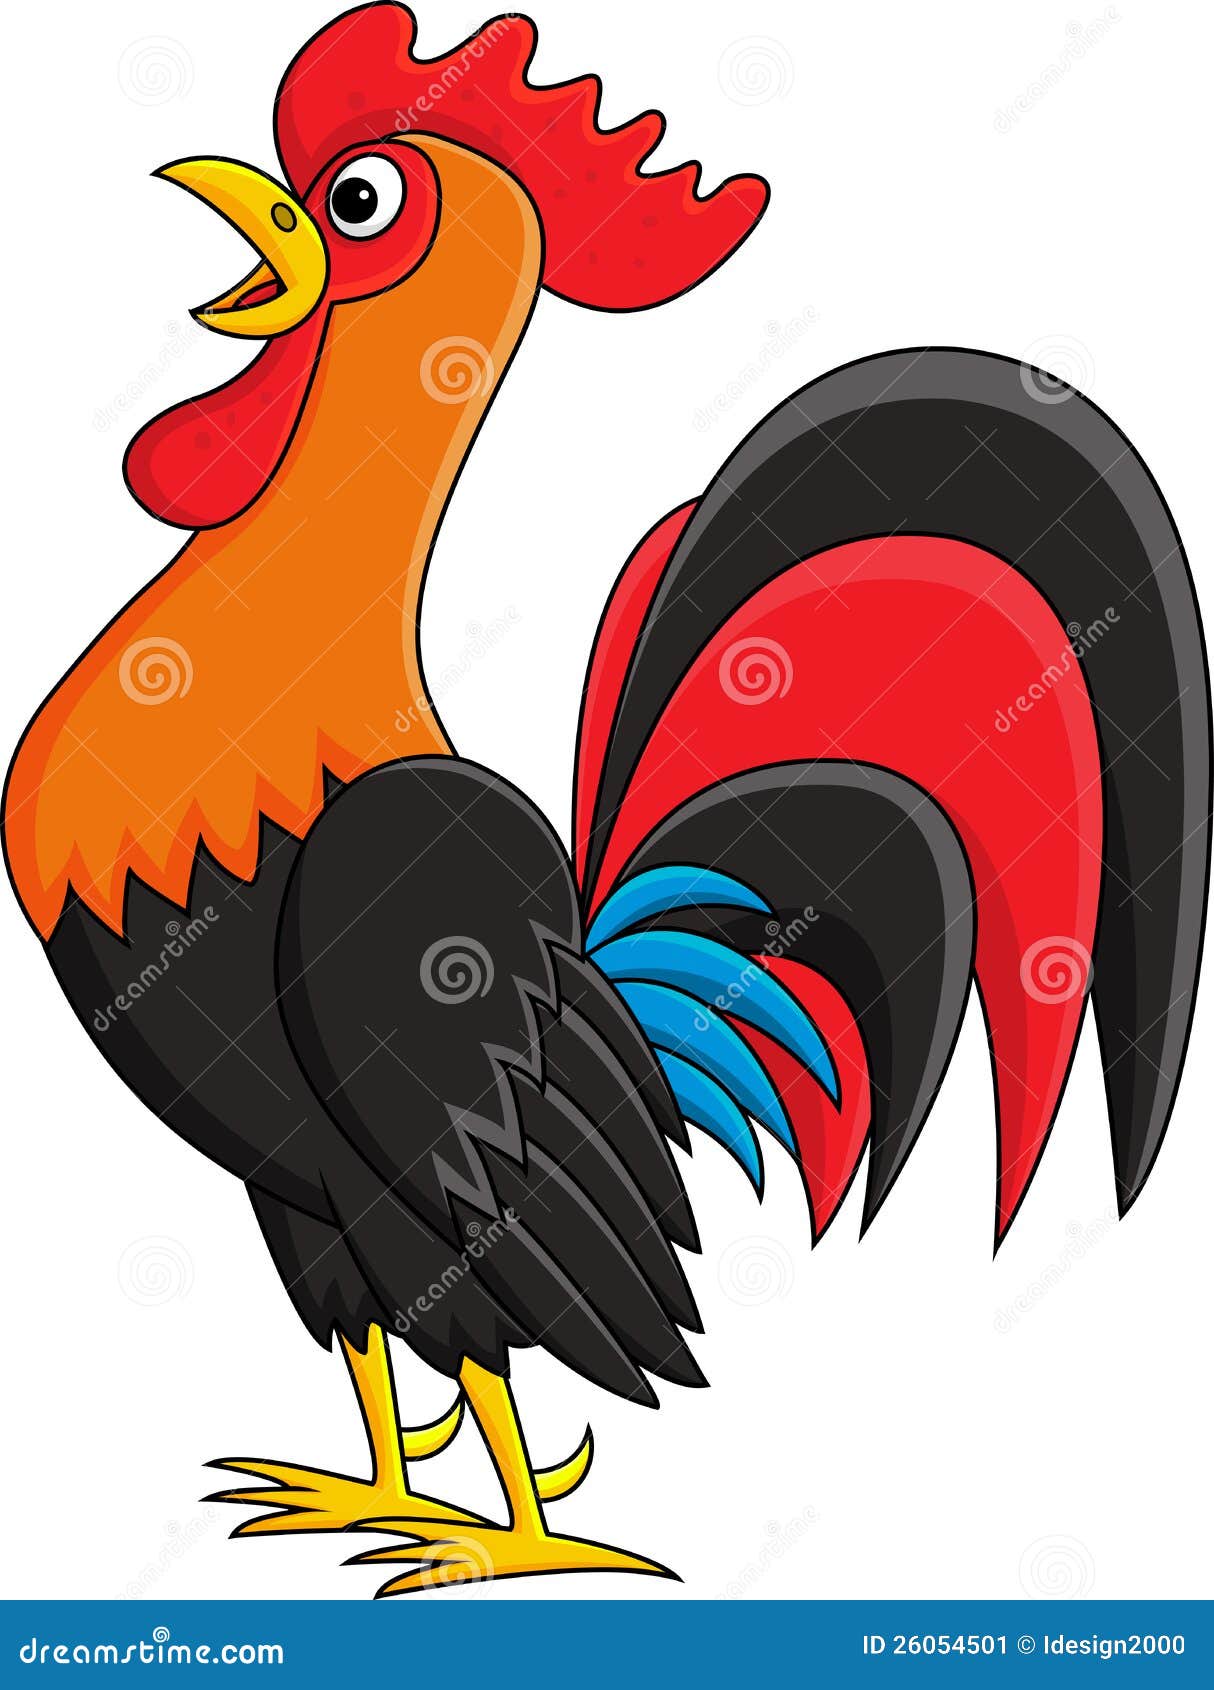 rooster-cartoon-26054501.jpg